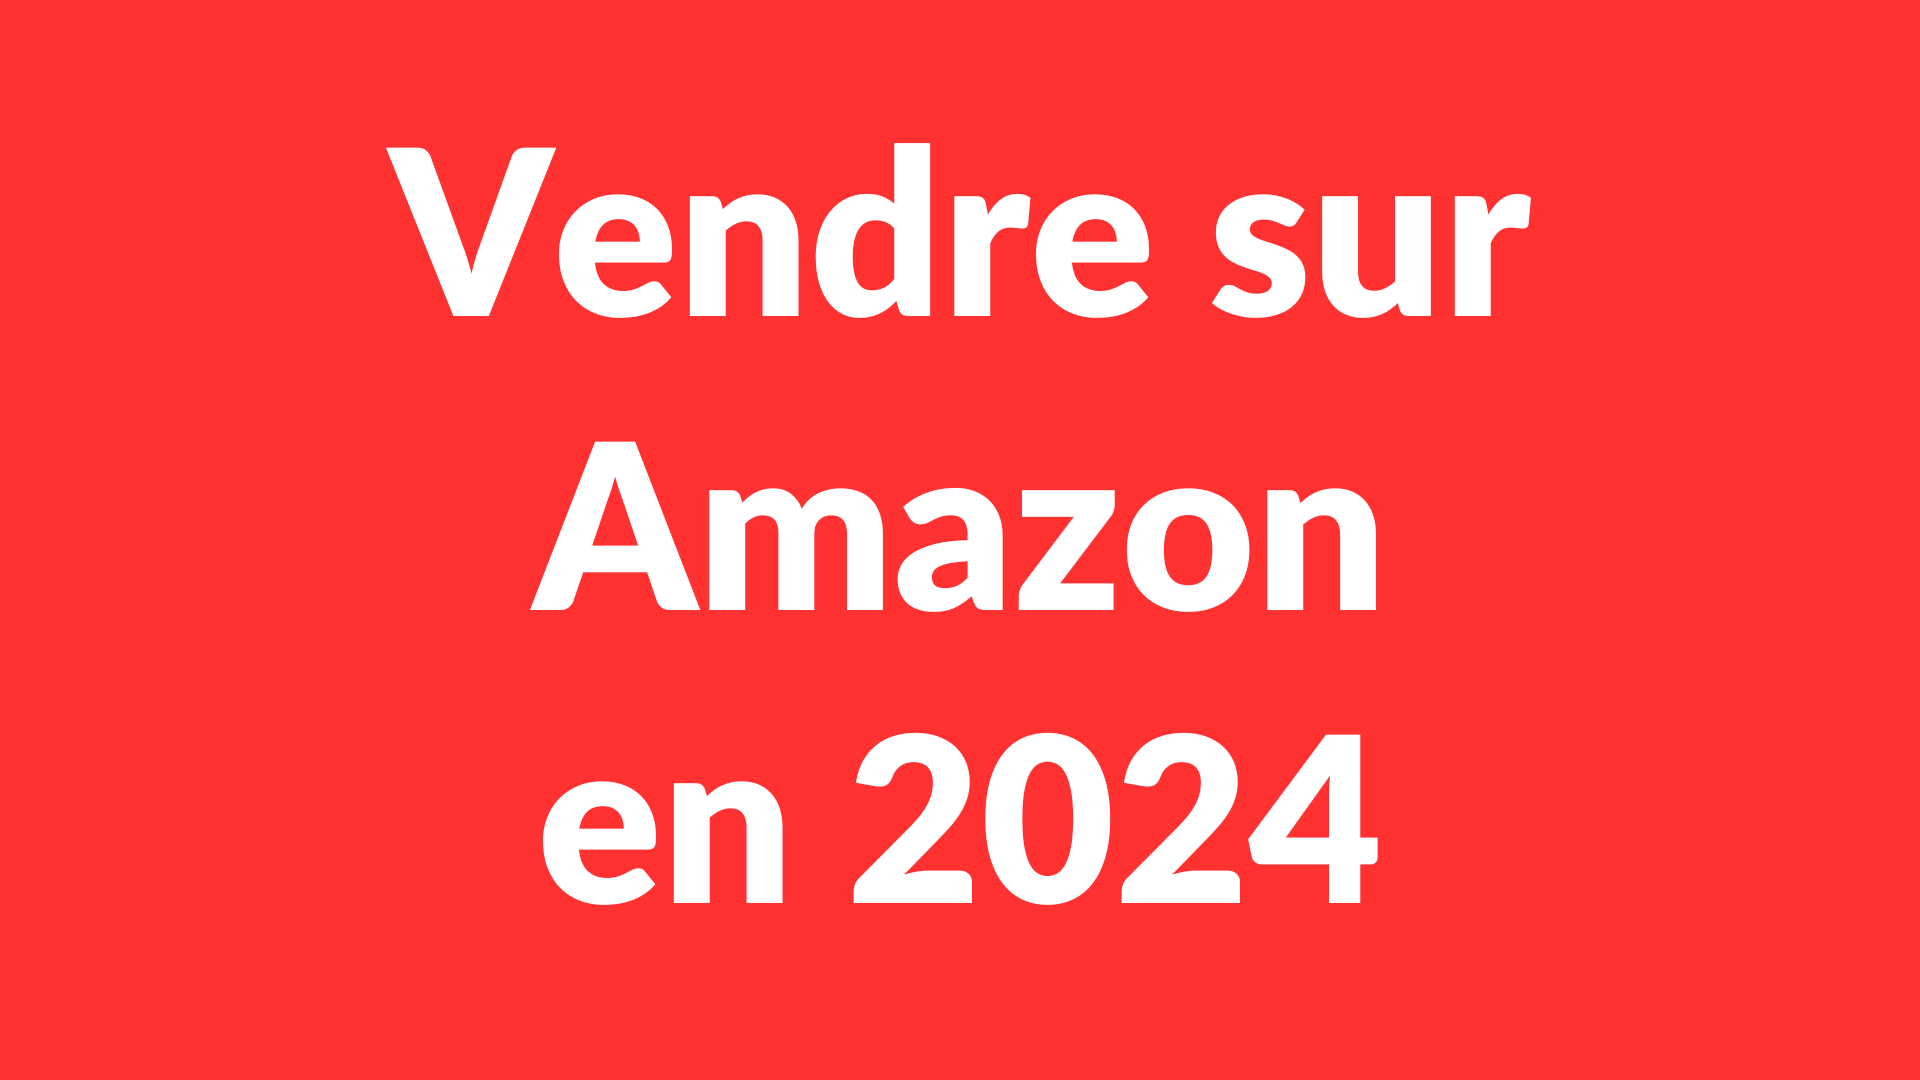 Vendre sur Amazon en 2024 (Formation)